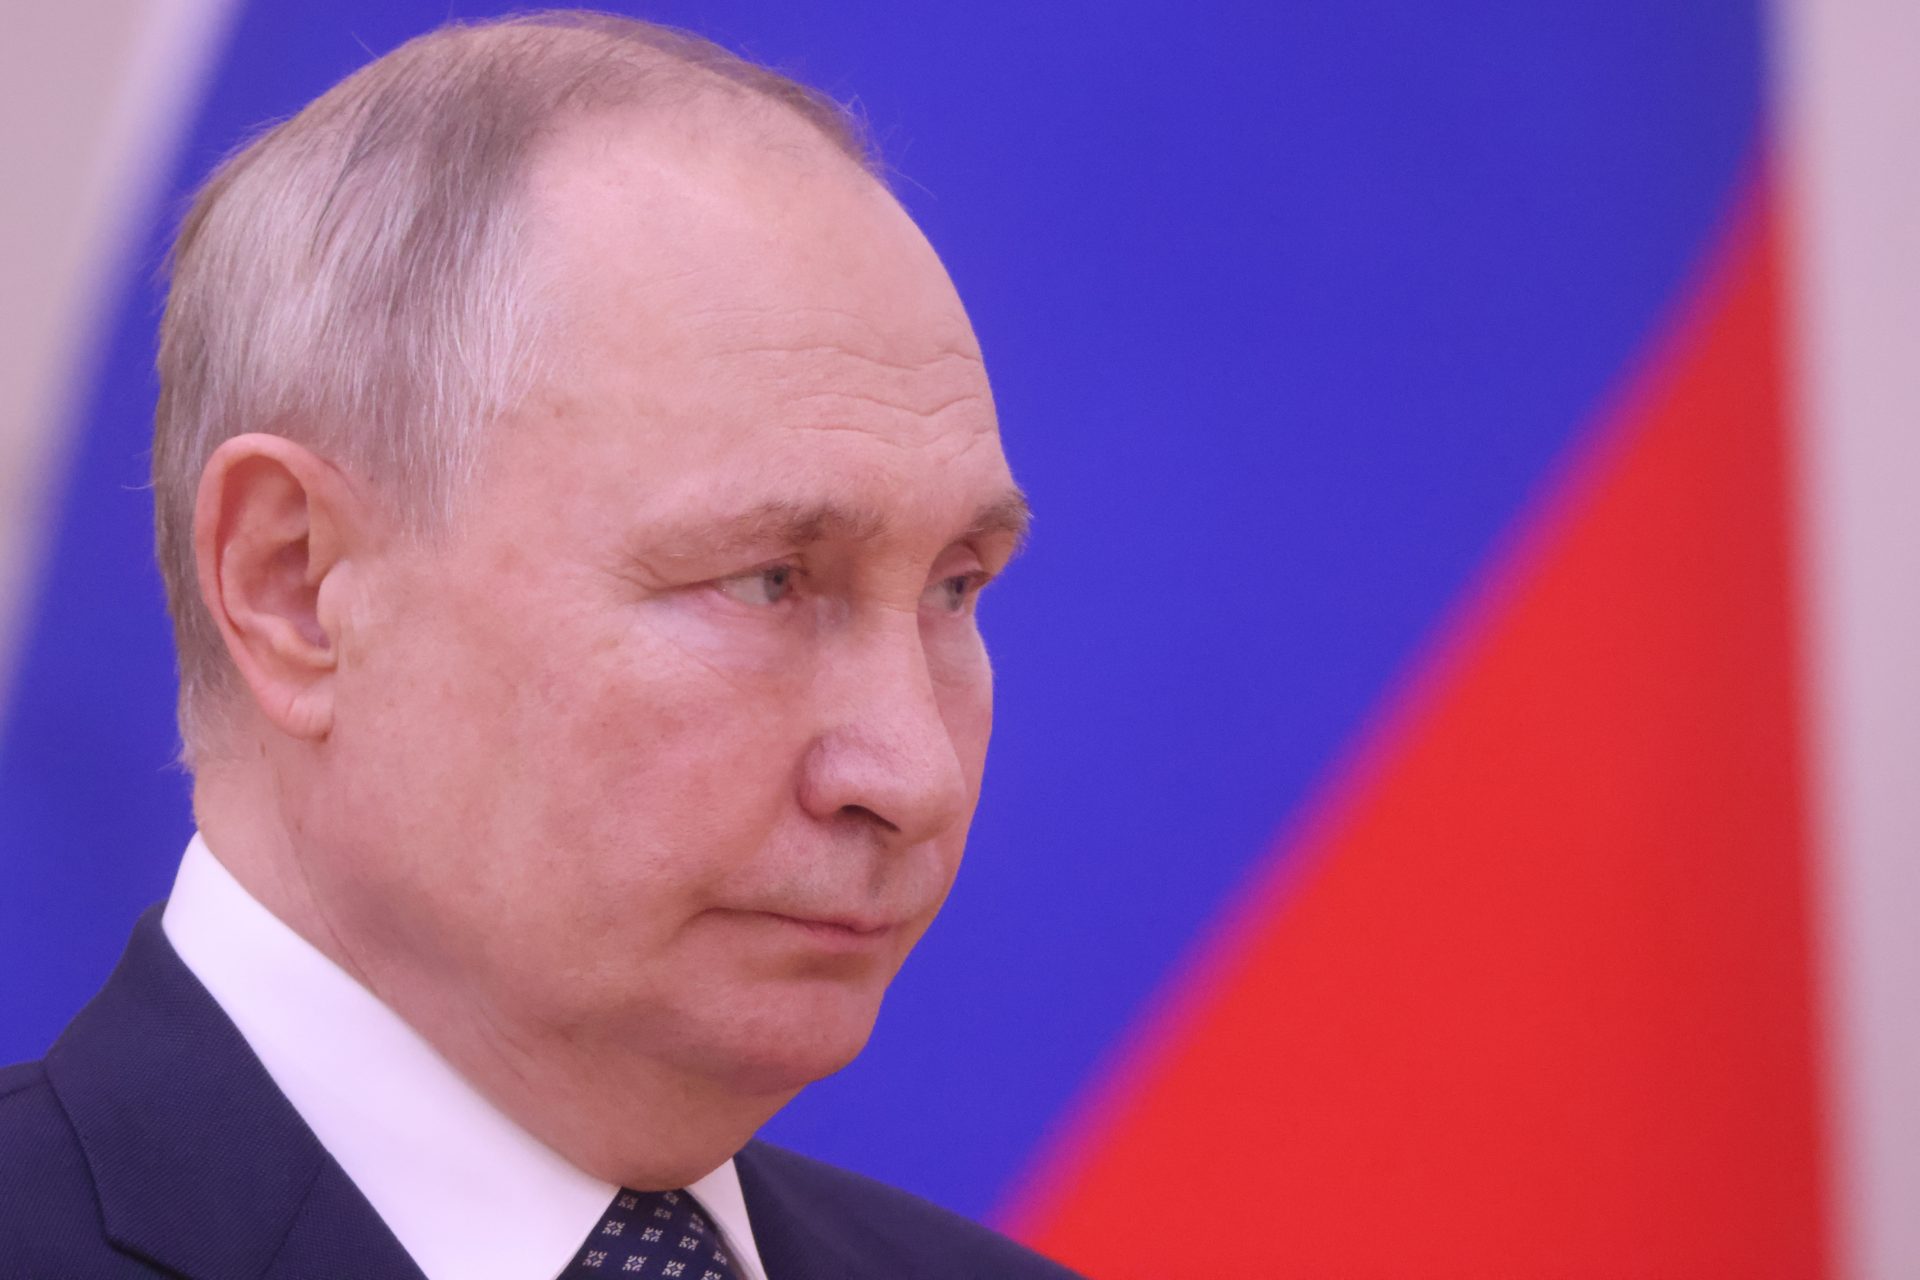 Will Putin’s determination to win outlast Ukraine's Western allies?